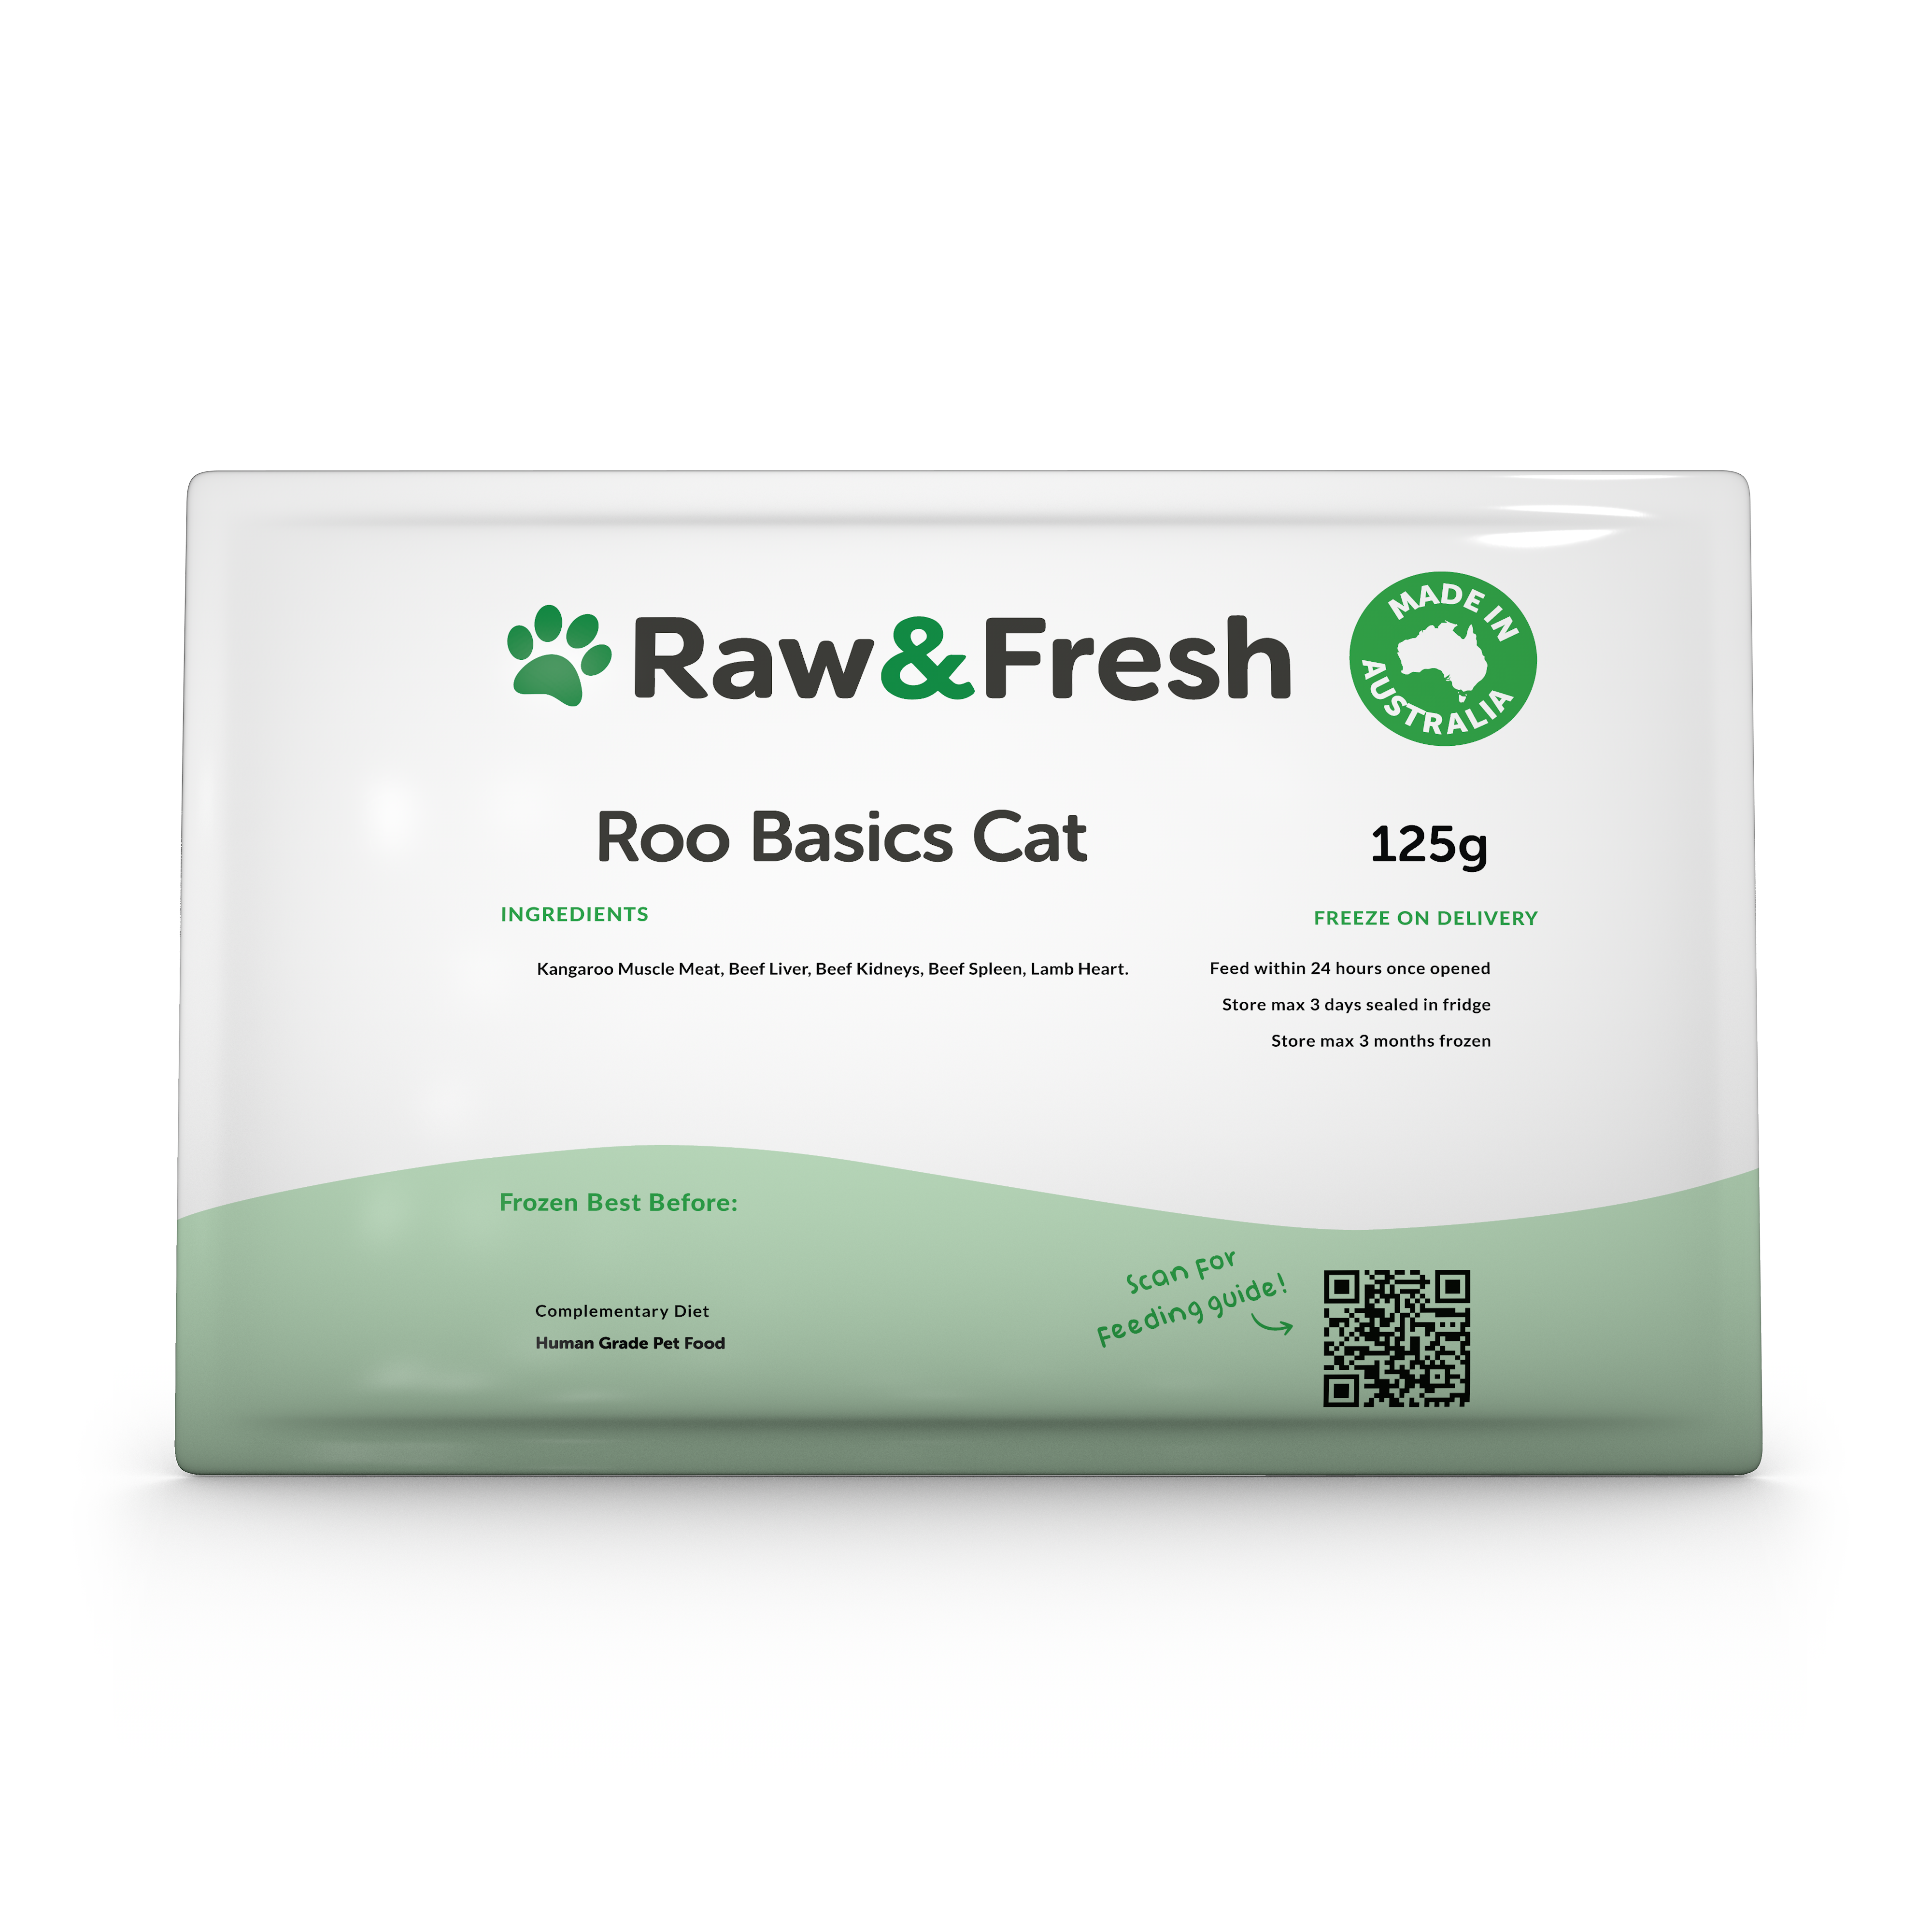 Roo Basics Cat - 125g Pack